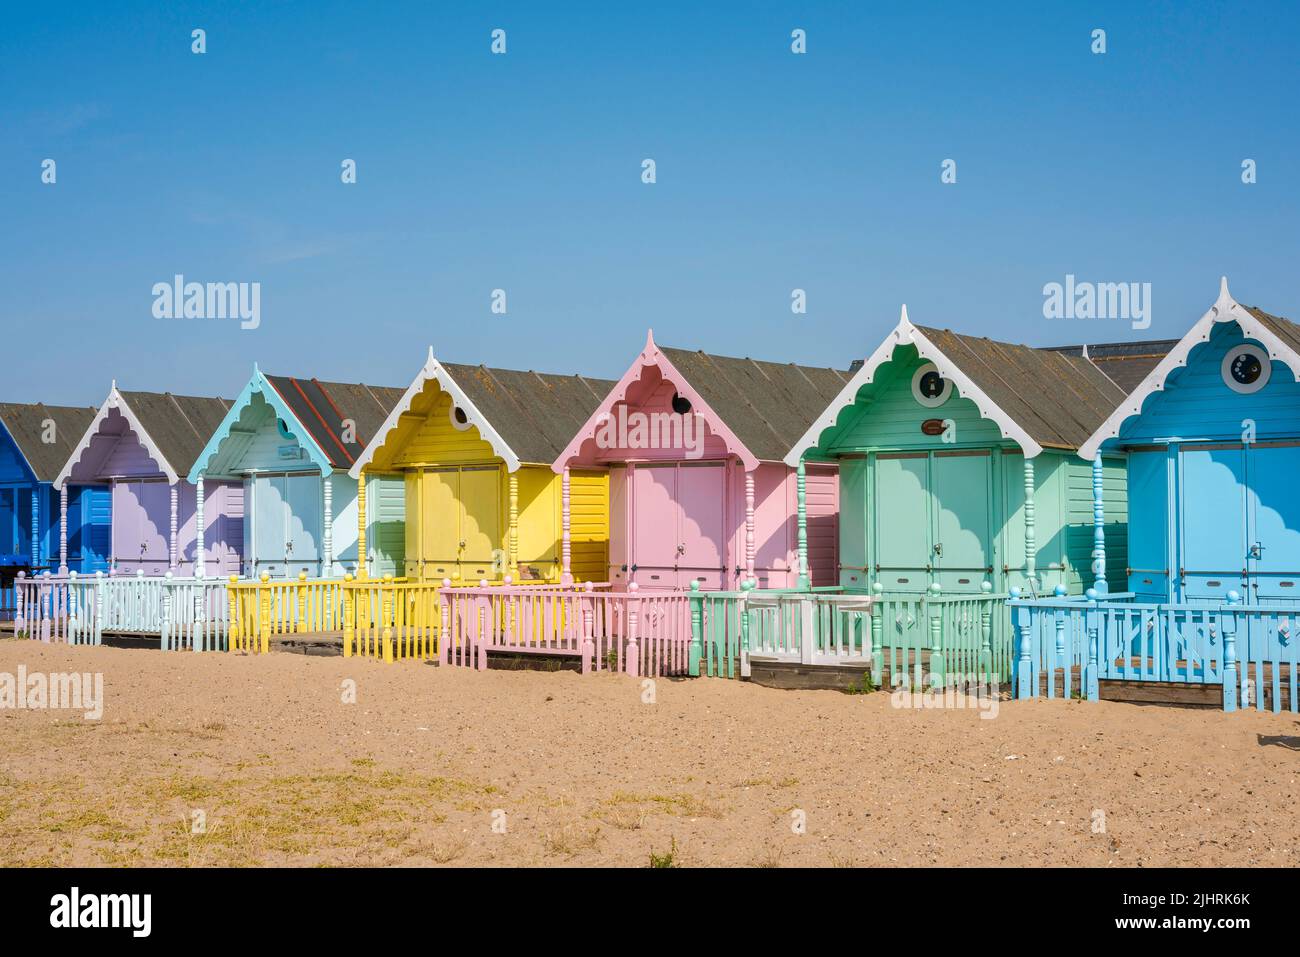 Strandhütten Großbritannien, Blick an einem Sommertag auf eine Reihe farbenfroher traditioneller Strandhütten am Strand in West Mersea, Essex, England, Großbritannien Stockfoto